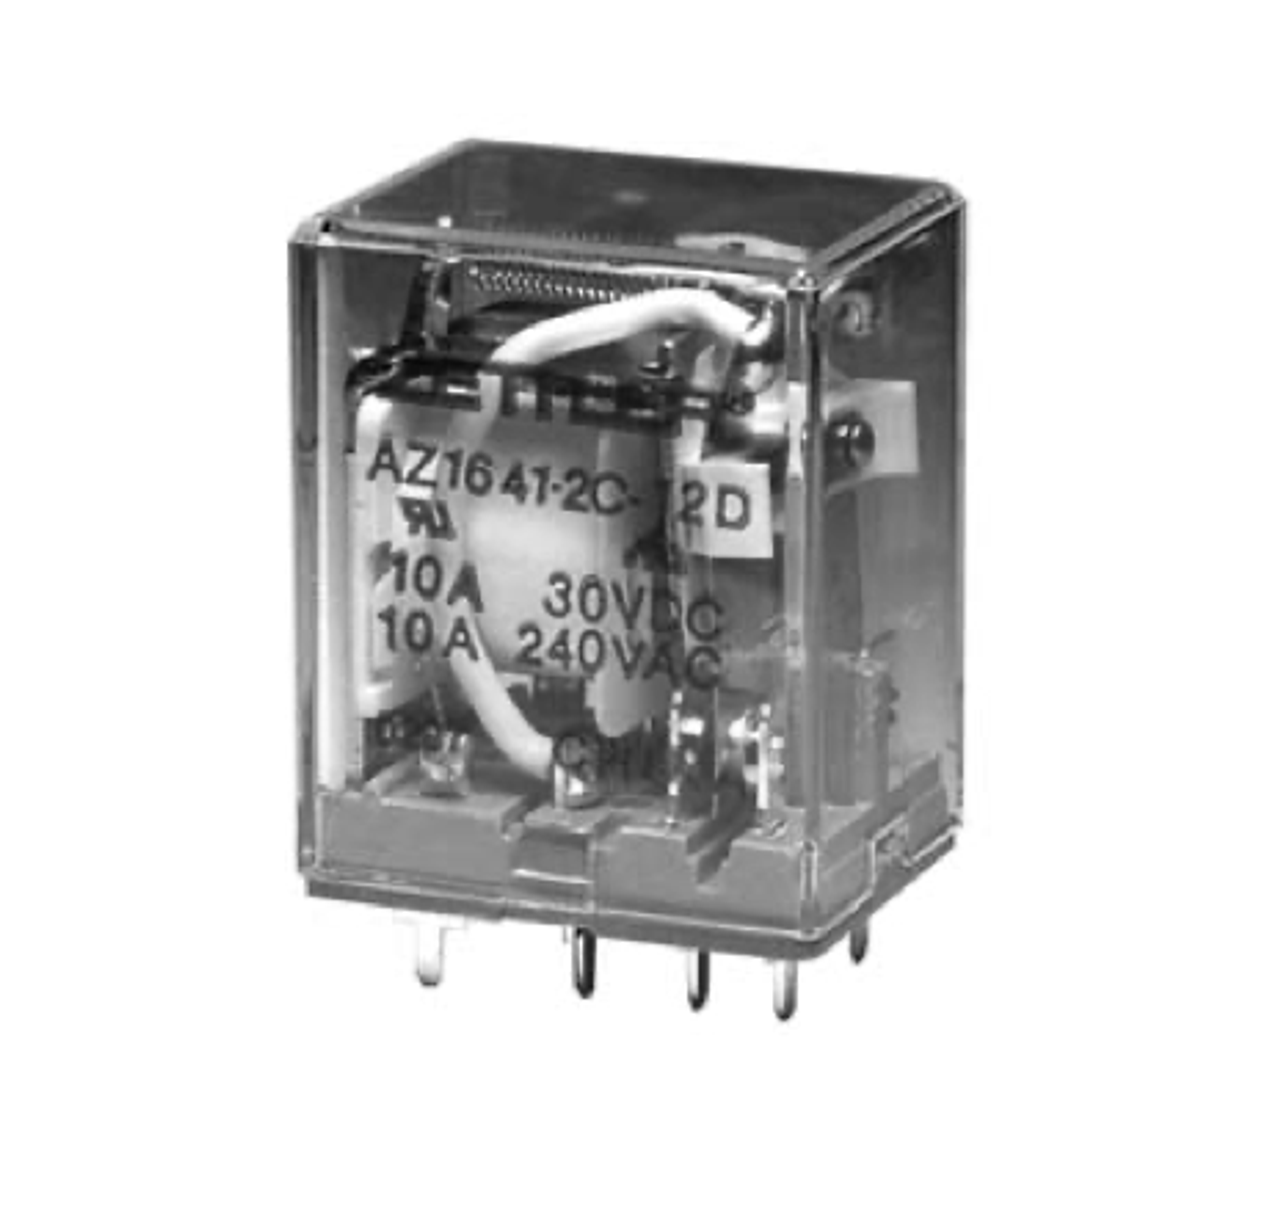 American Zettler AZ1641-1CT-120A Power Relay